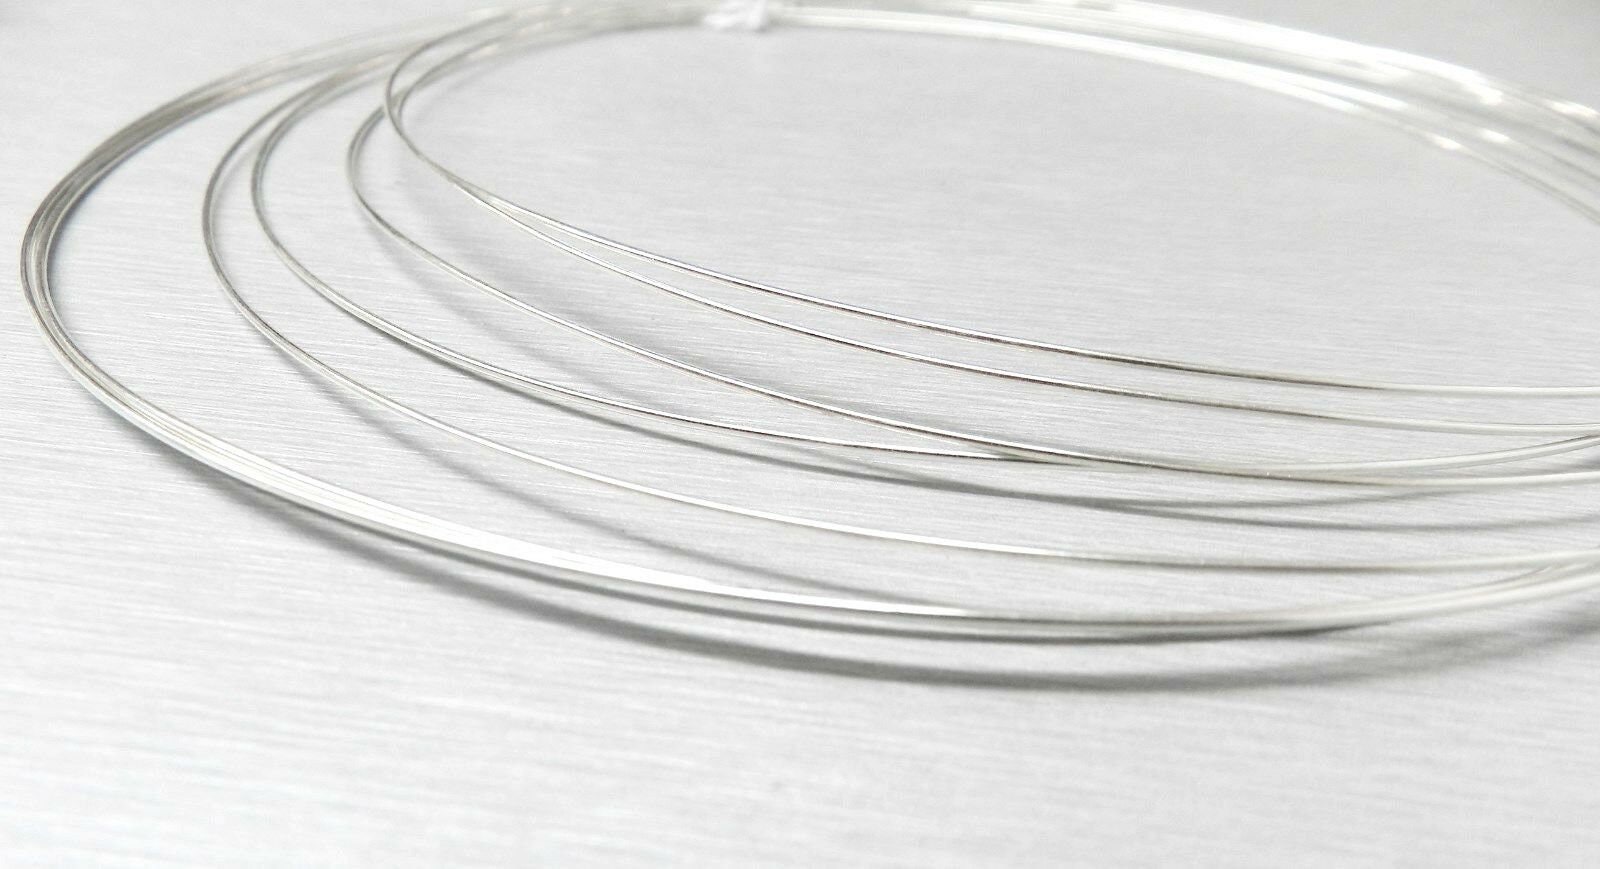 Argentium Silver Solder Wire Easy, Medium 20 Gauge Made in USA 